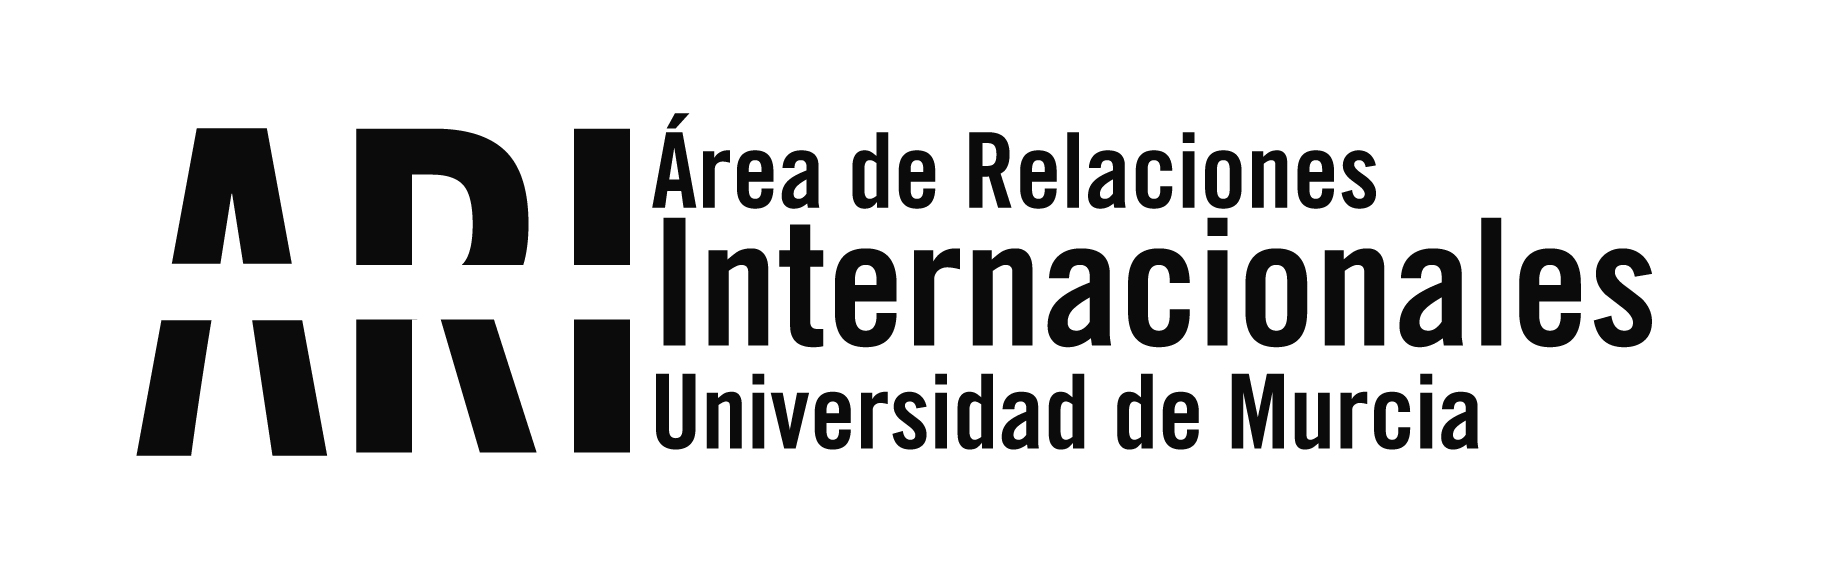 20180202 Recepción Institucional UM - Eventos - Área de Relaciones Internacionales